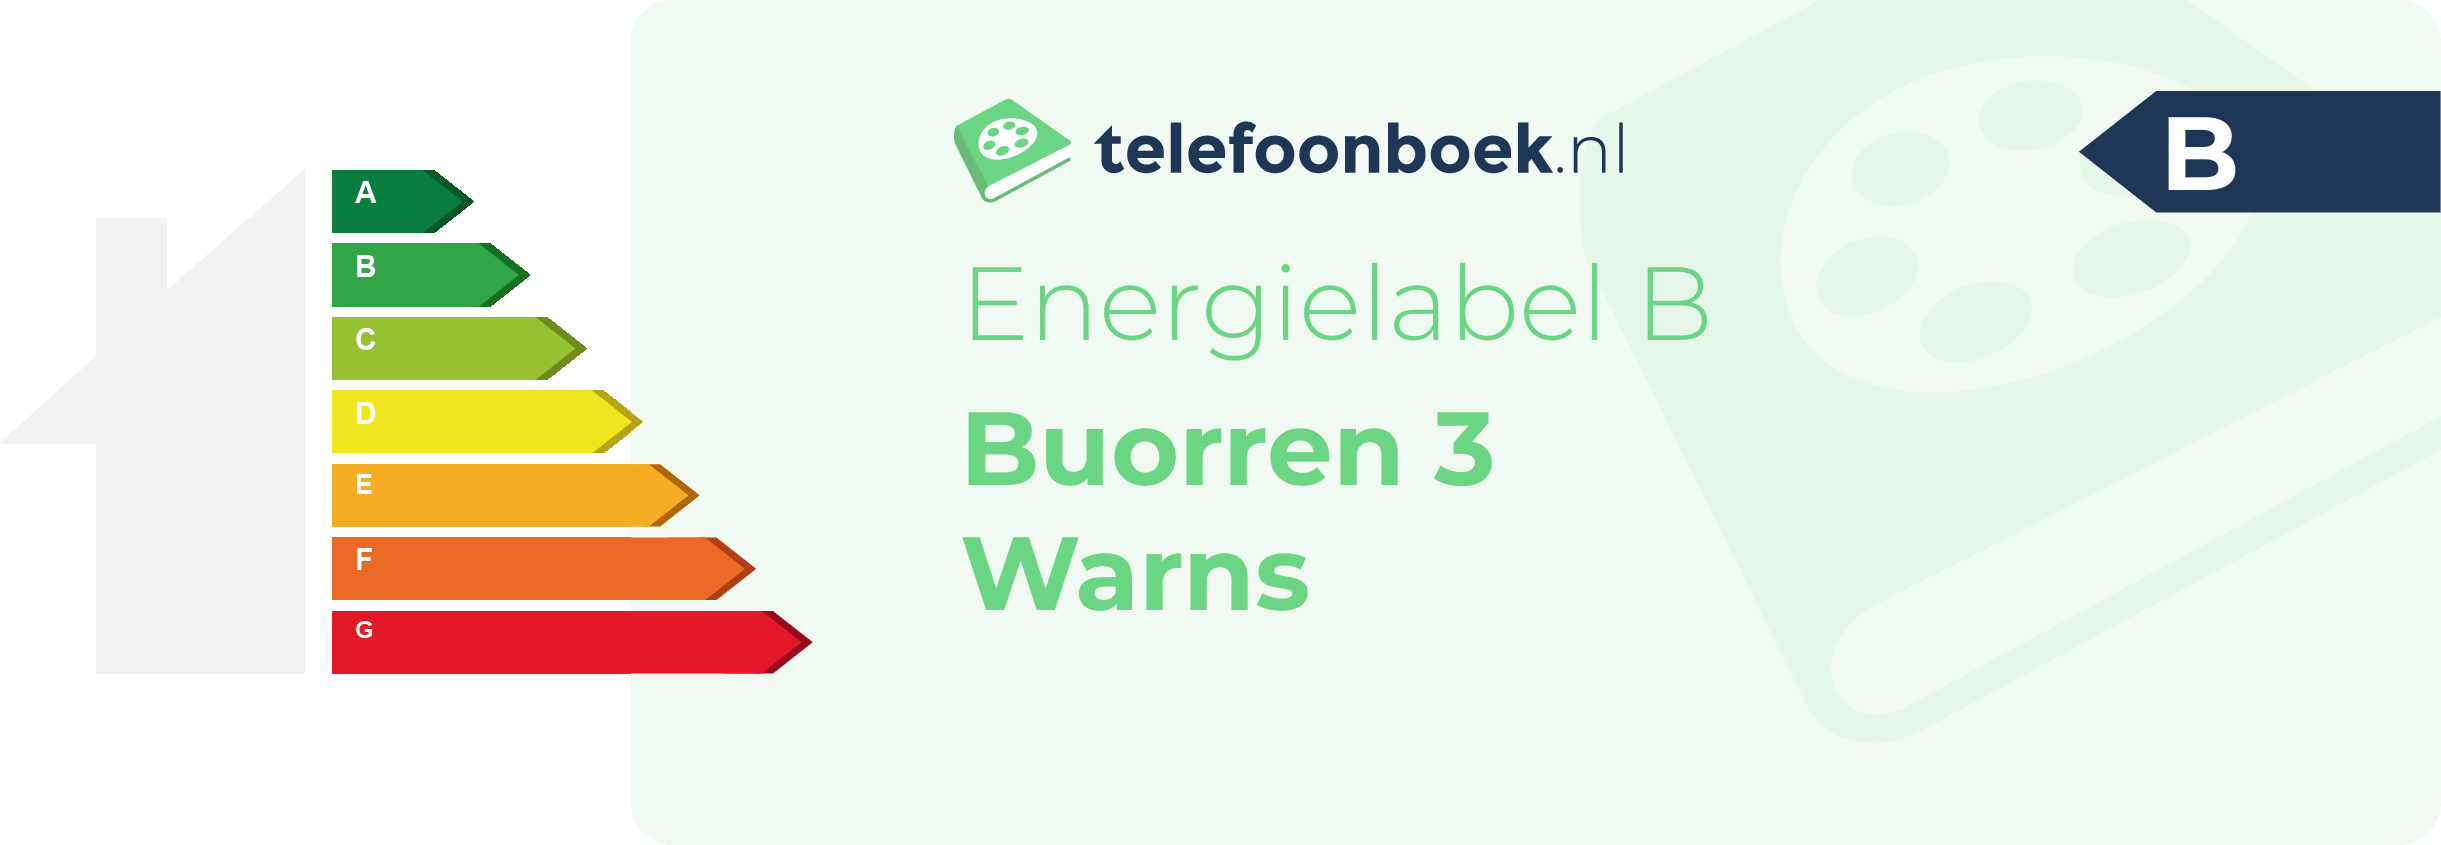 Energielabel Buorren 3 Warns